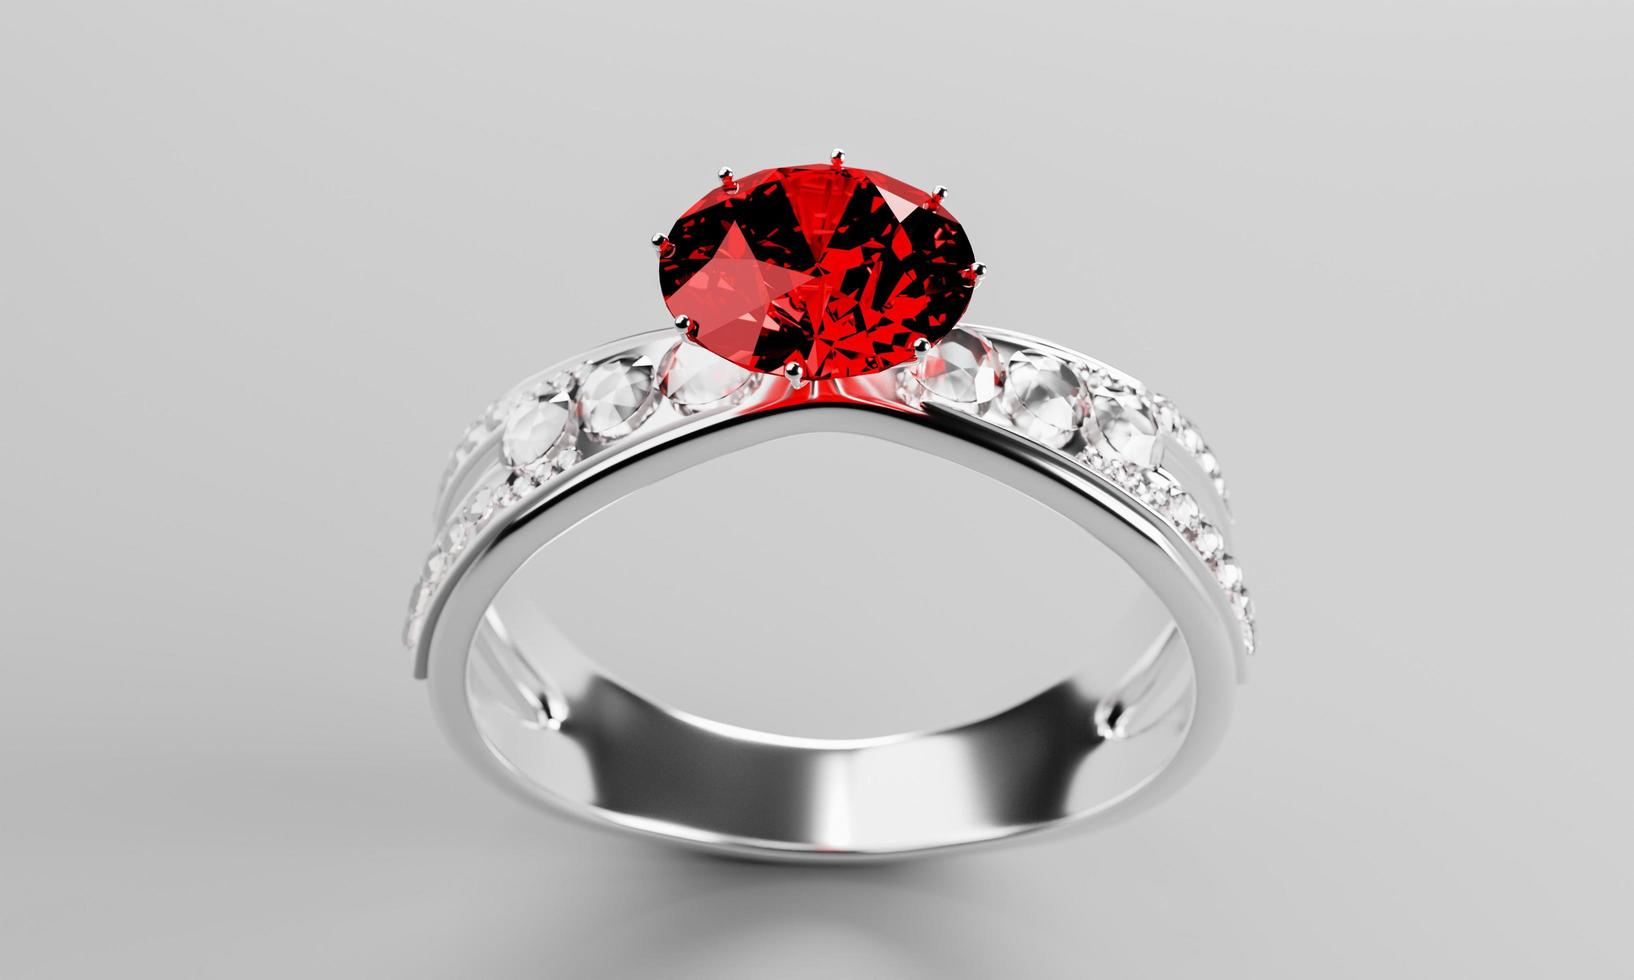 de grote rode diamant of robijn is omgeven door vele diamanten op de ring gemaakt van platina goud geplaatst op een grijze achtergrond. elegante trouwring met diamanten voor vrouwen. 3D-rendering foto